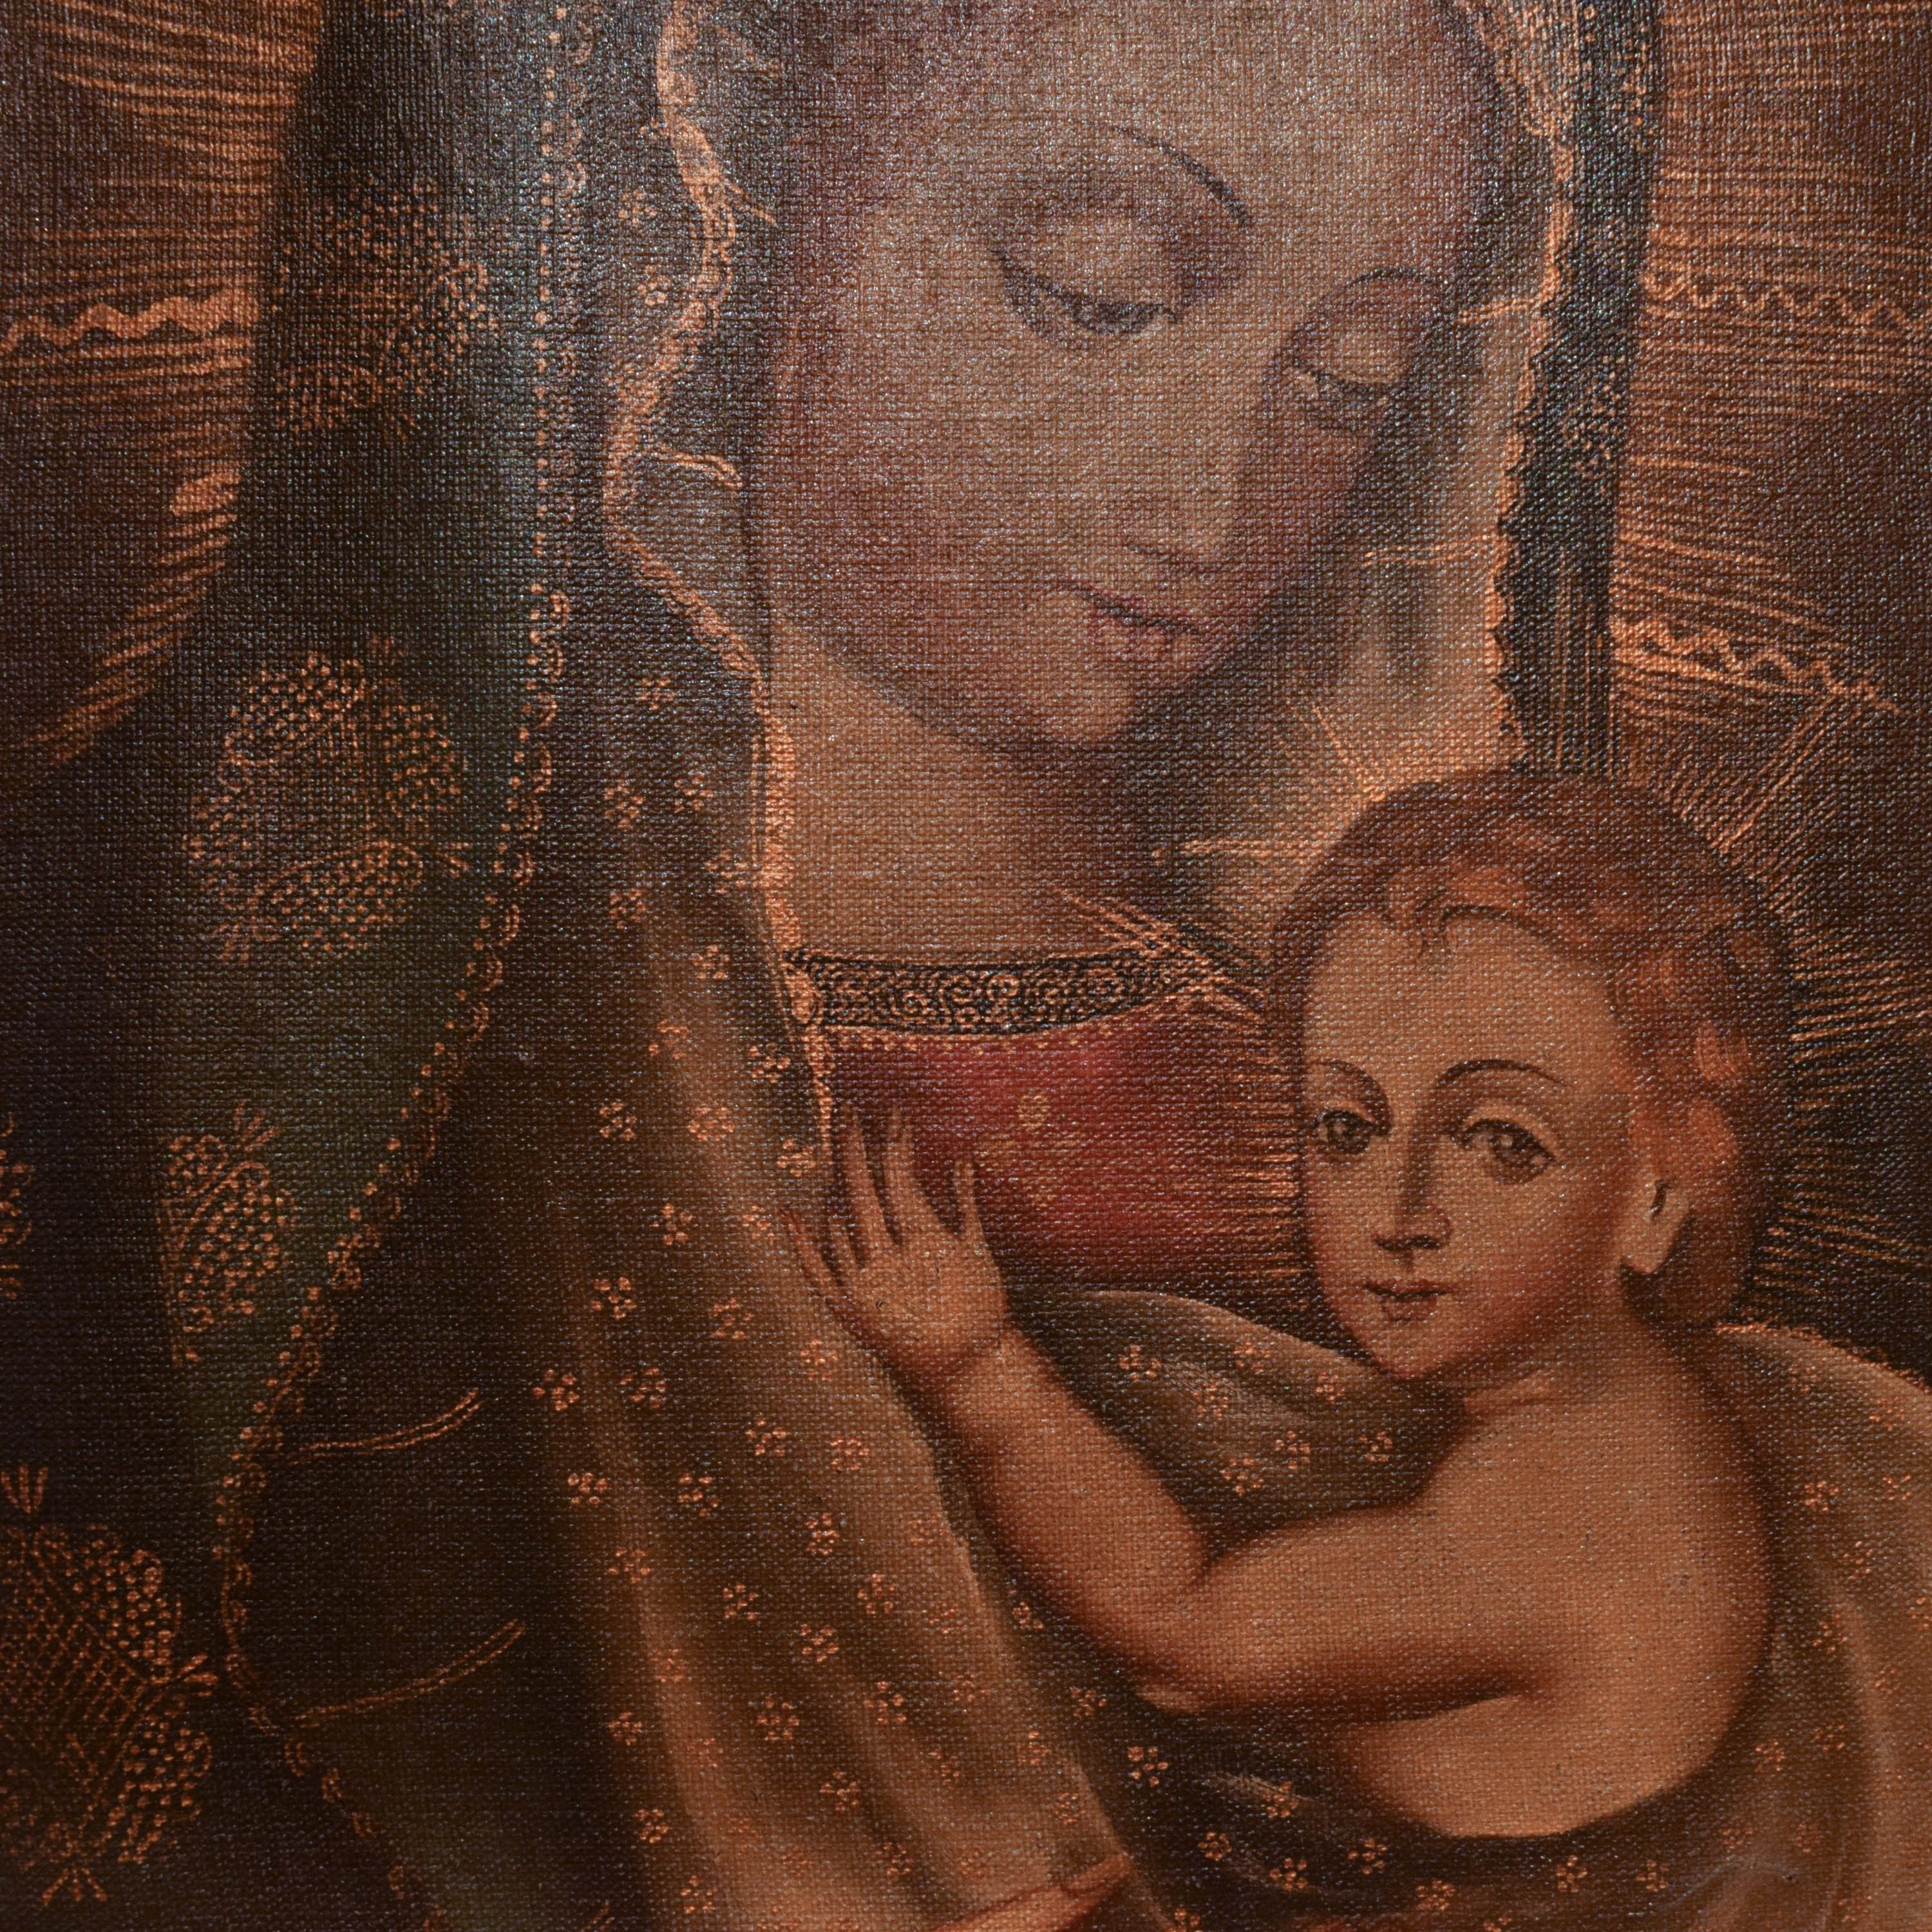 Framed Madonna and Child